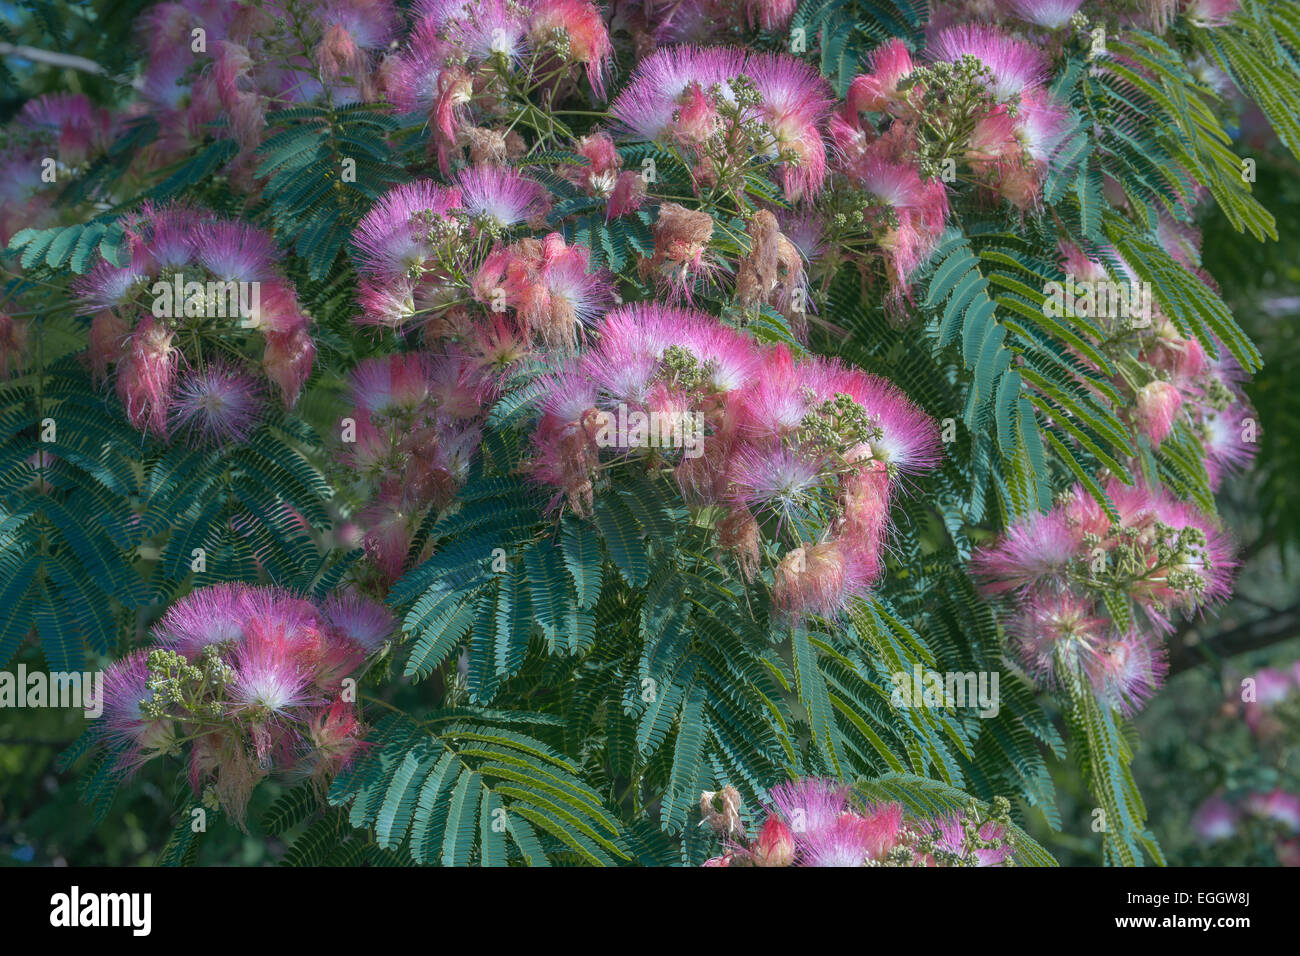 Silktree (Albizia julibrissin). Stock Photo